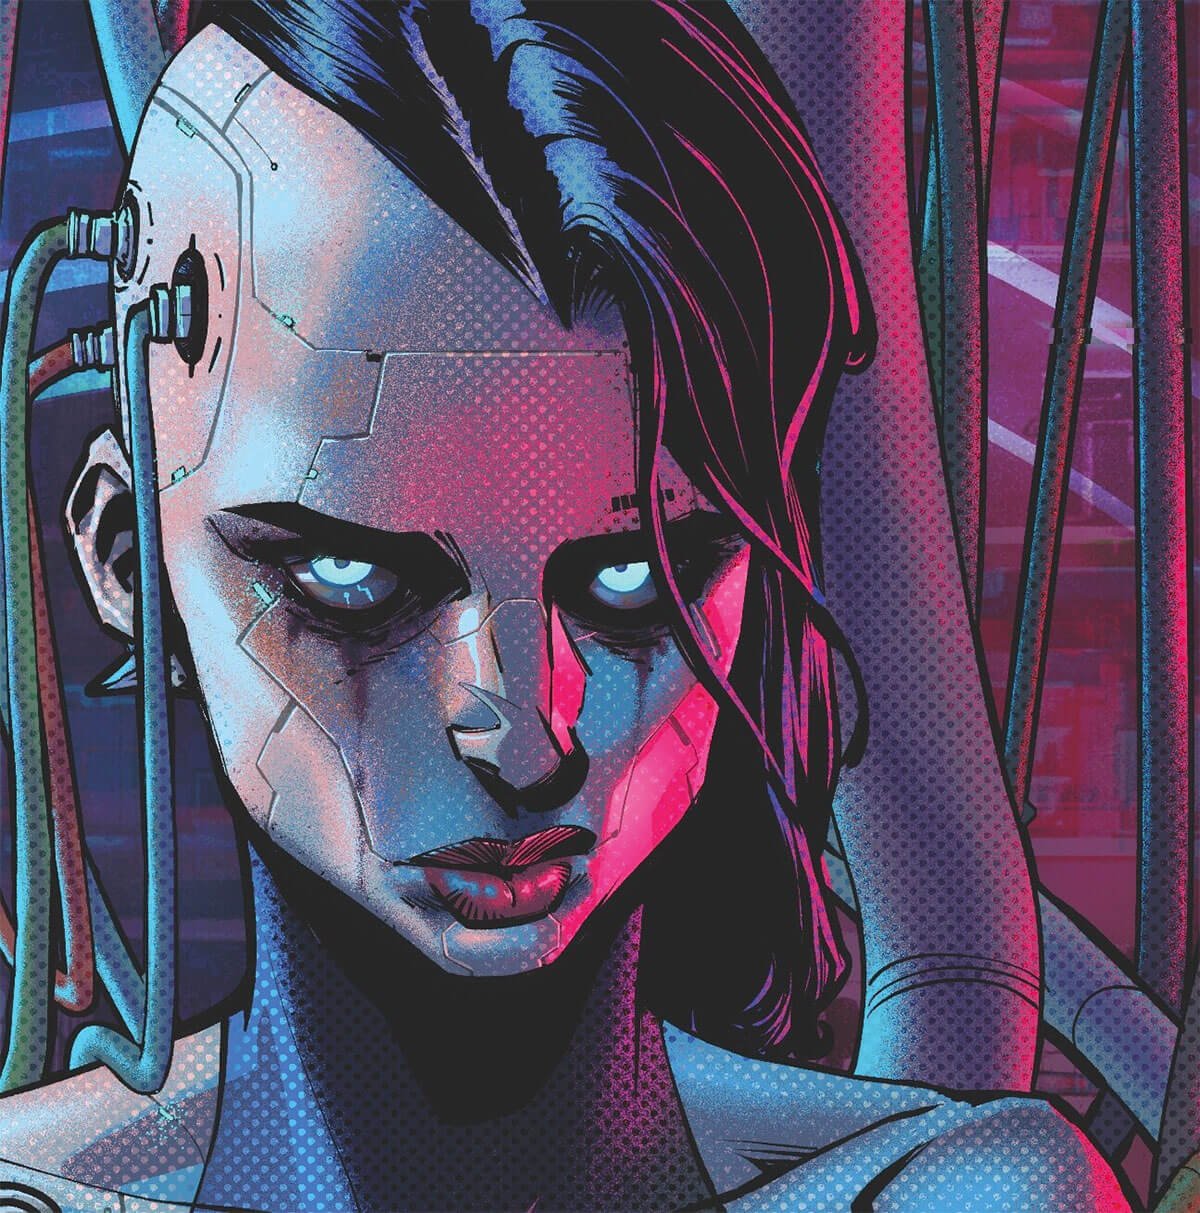 Cyborg Girl by Danny Kim